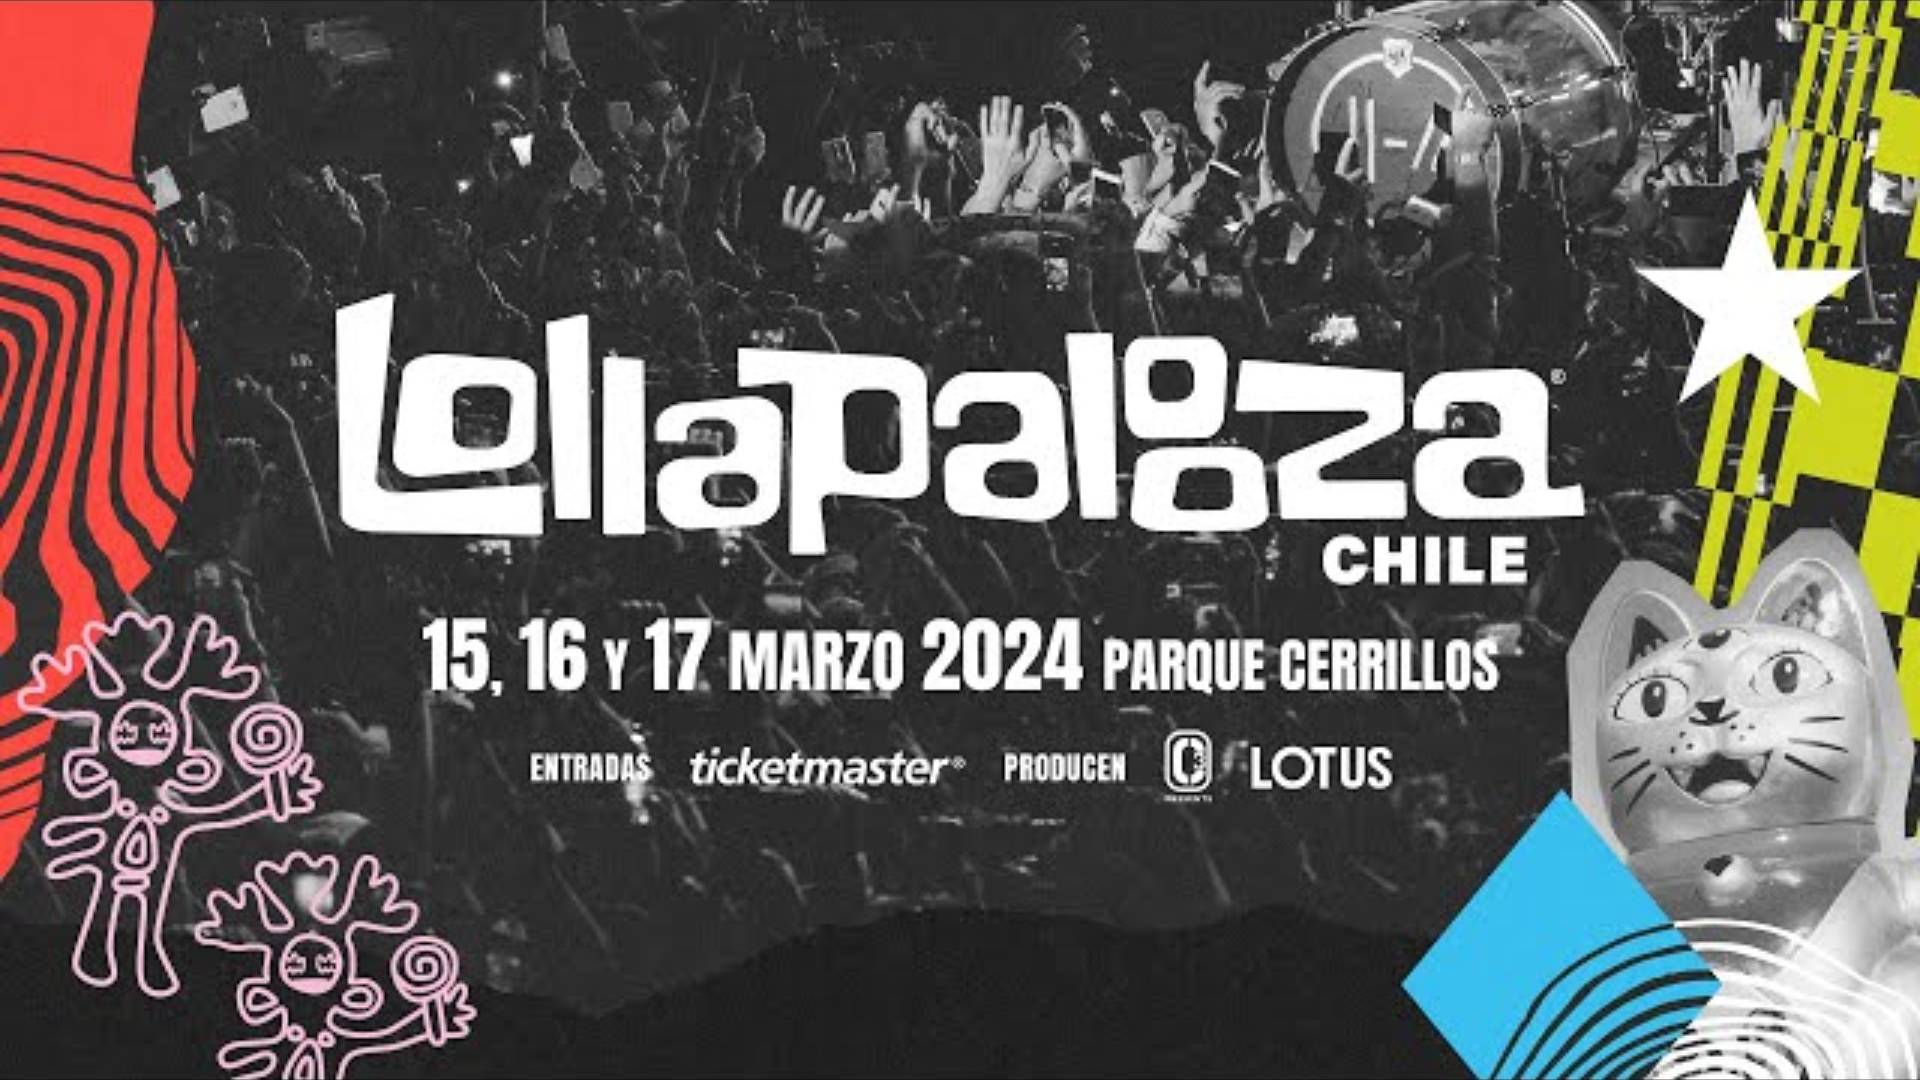 Conoce el line up de Lollapalooza Chile 2024